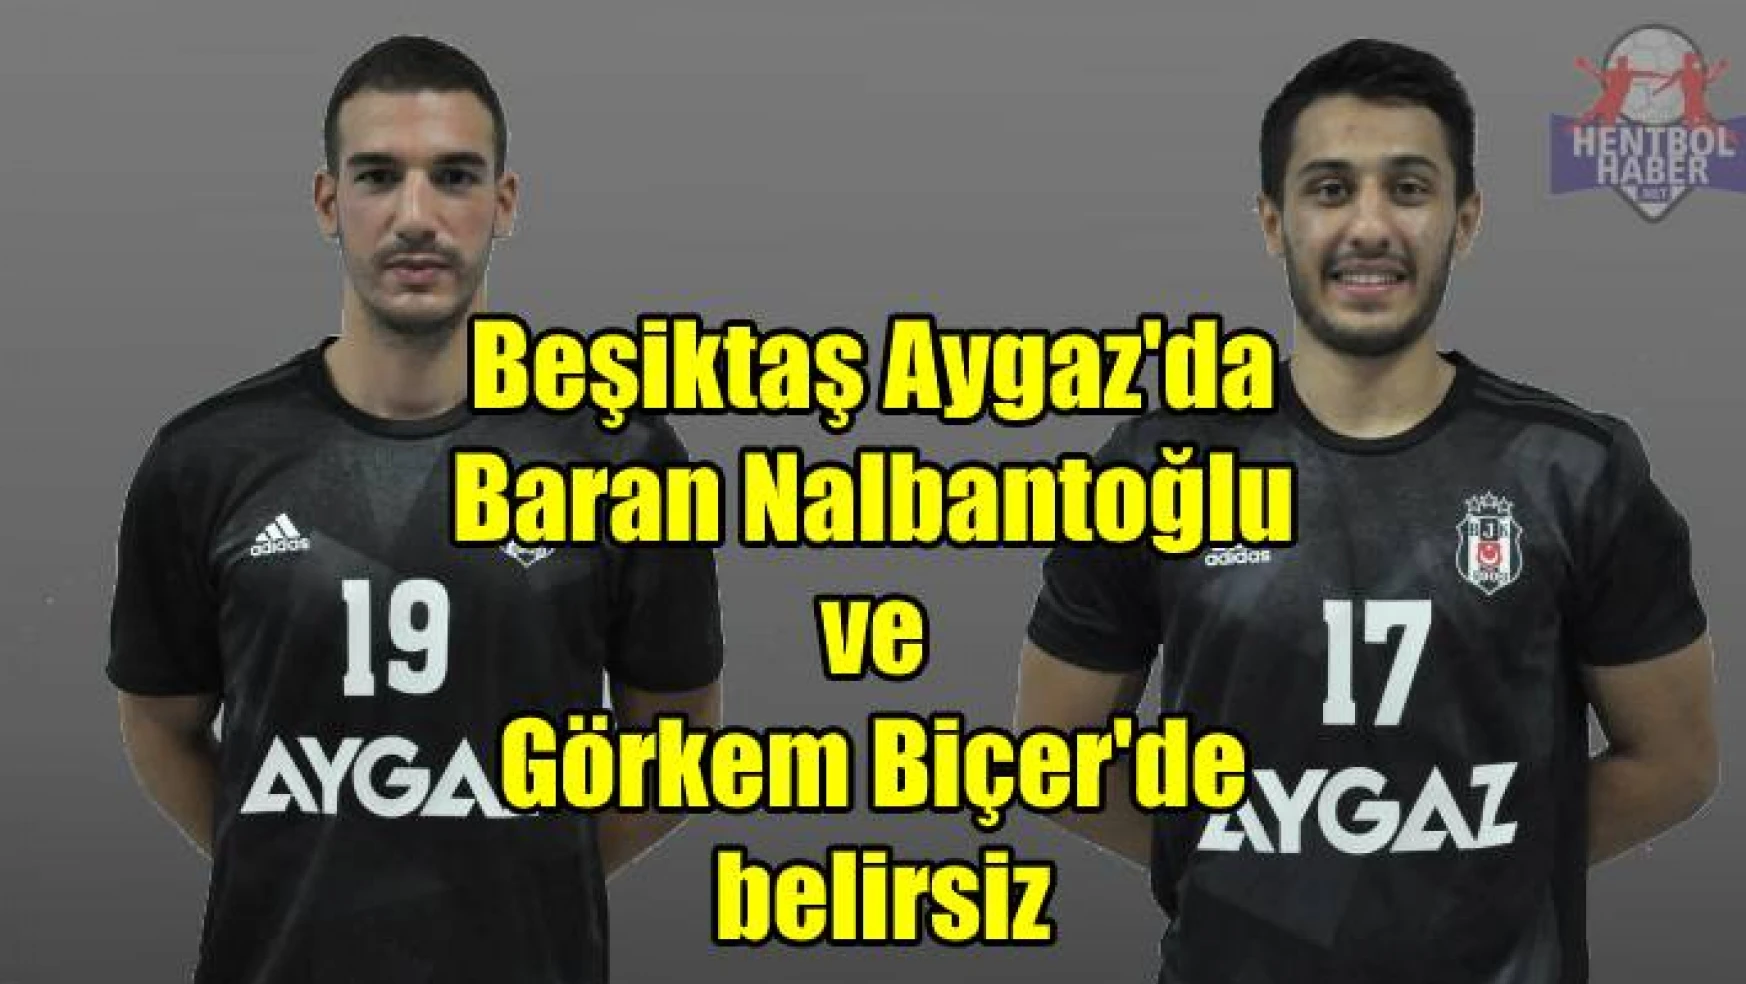 Beşiktaş Aygaz’da Baran ve Görkem belirsiz